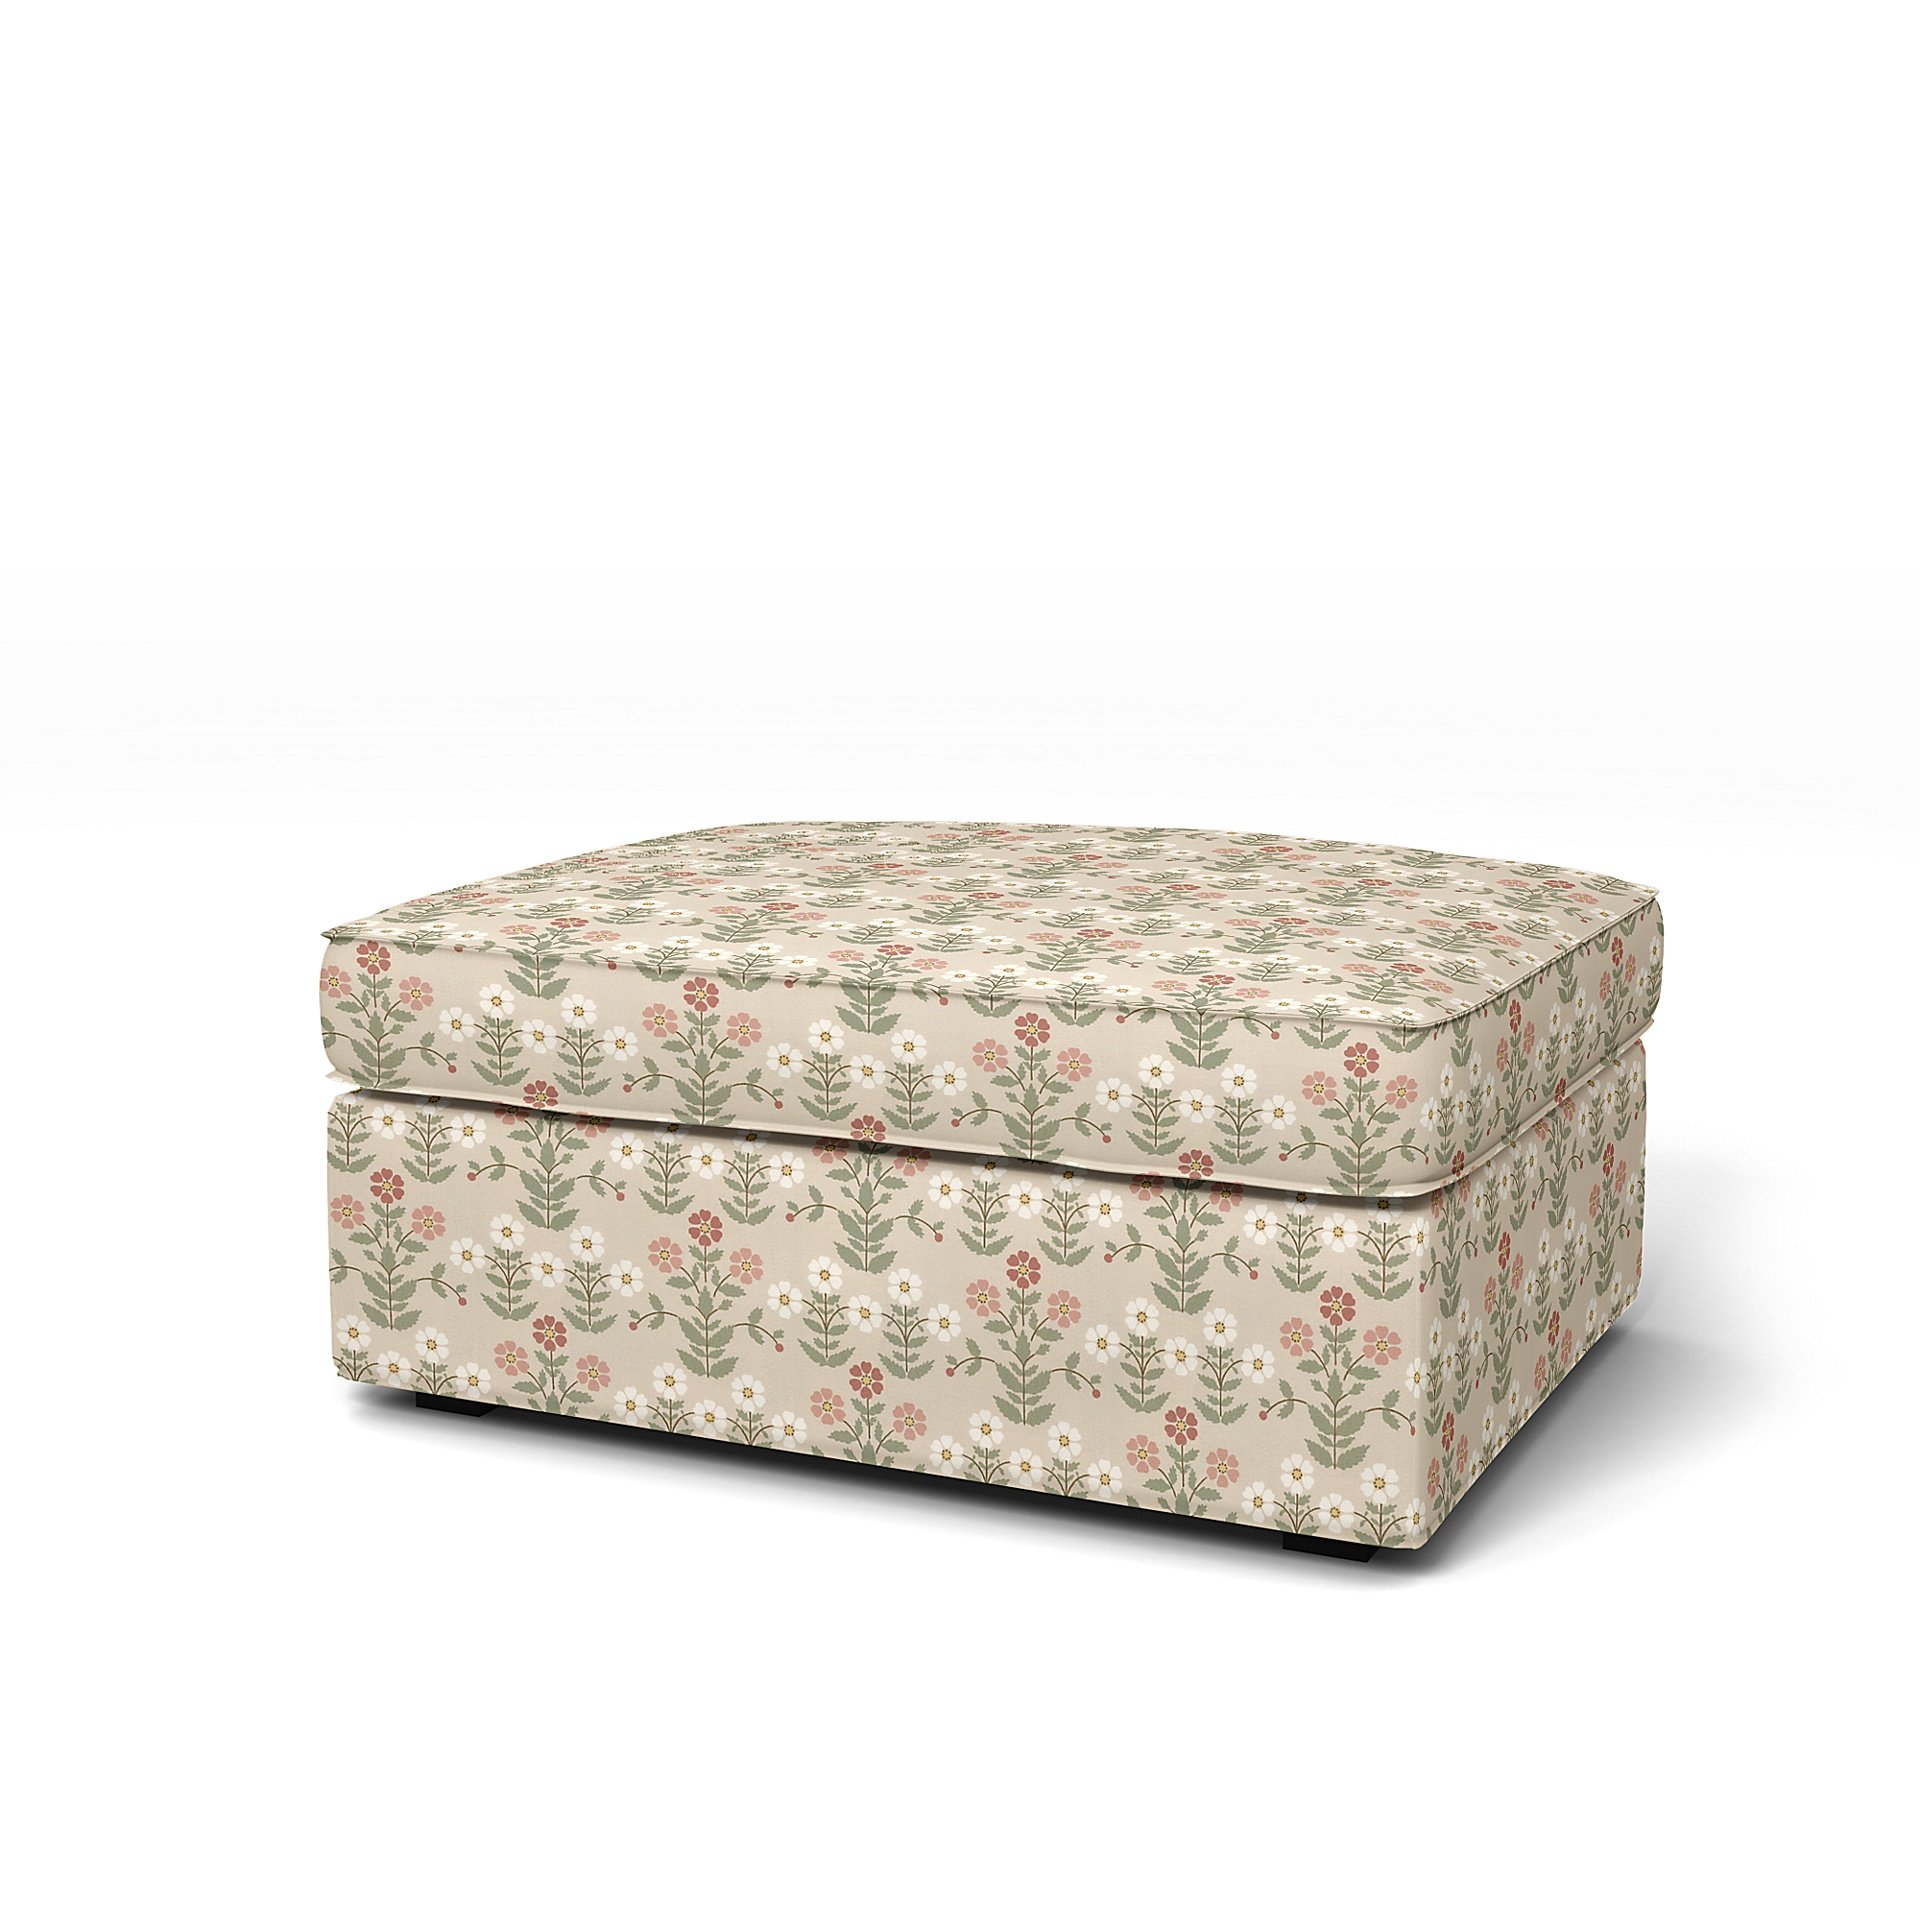 IKEA - Kivik Footstool Cover, Pink Sippor, BEMZ x BORASTAPETER COLLECTION - Bemz